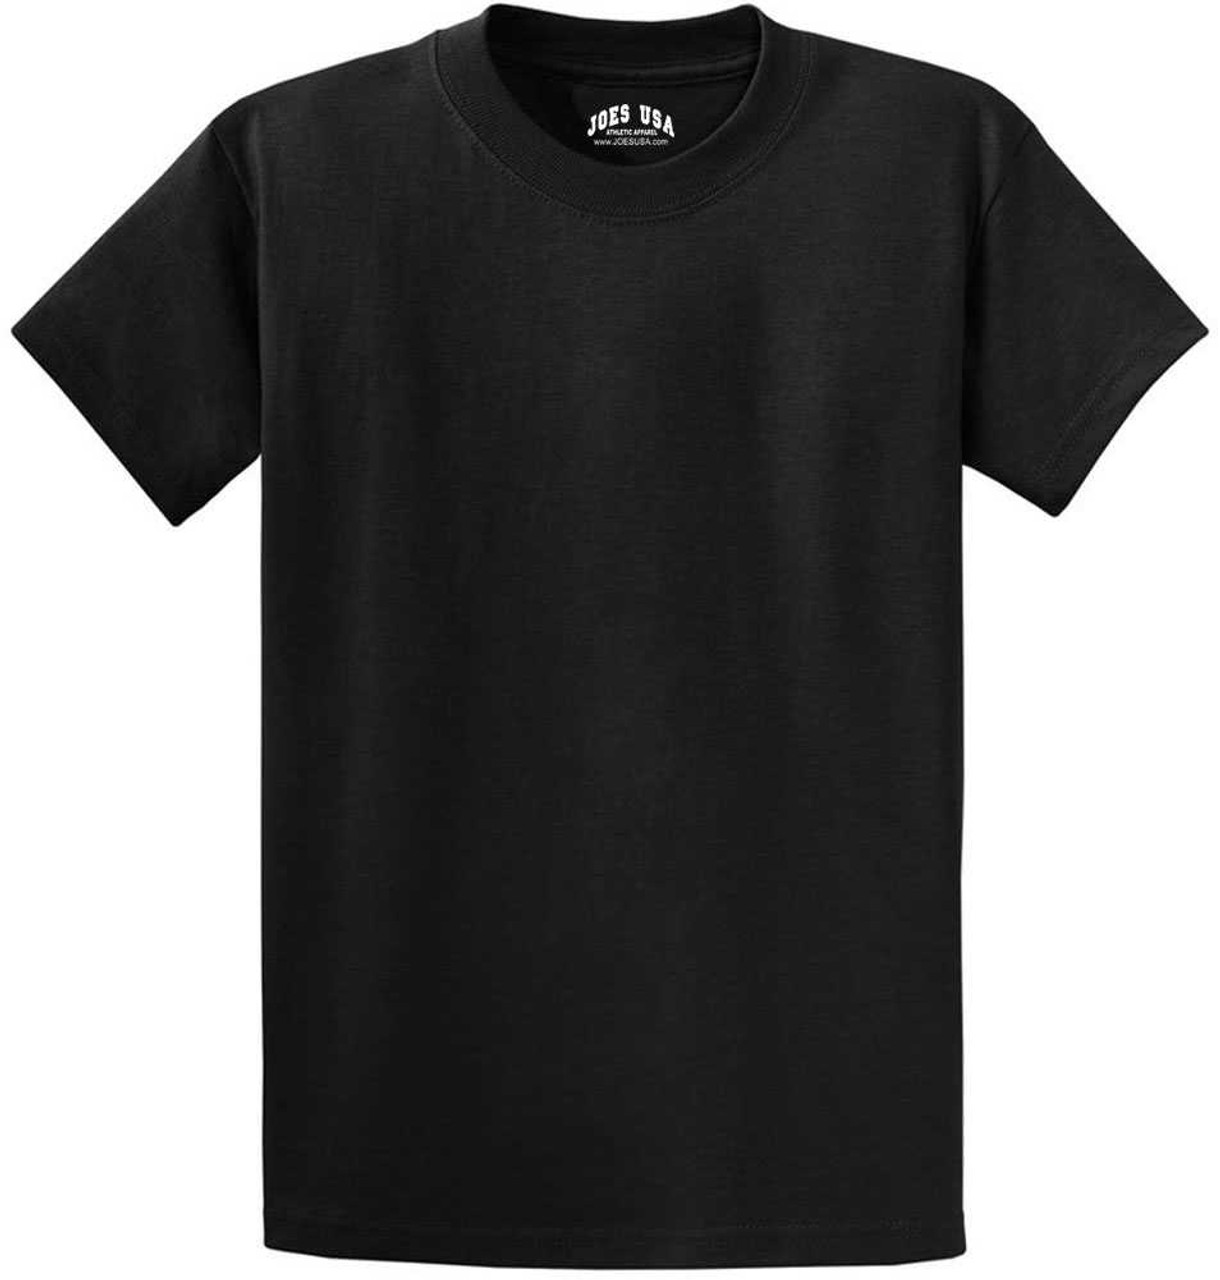 Mens Heavyweight cotton tshirts - 100% cotton, 6.1 oz